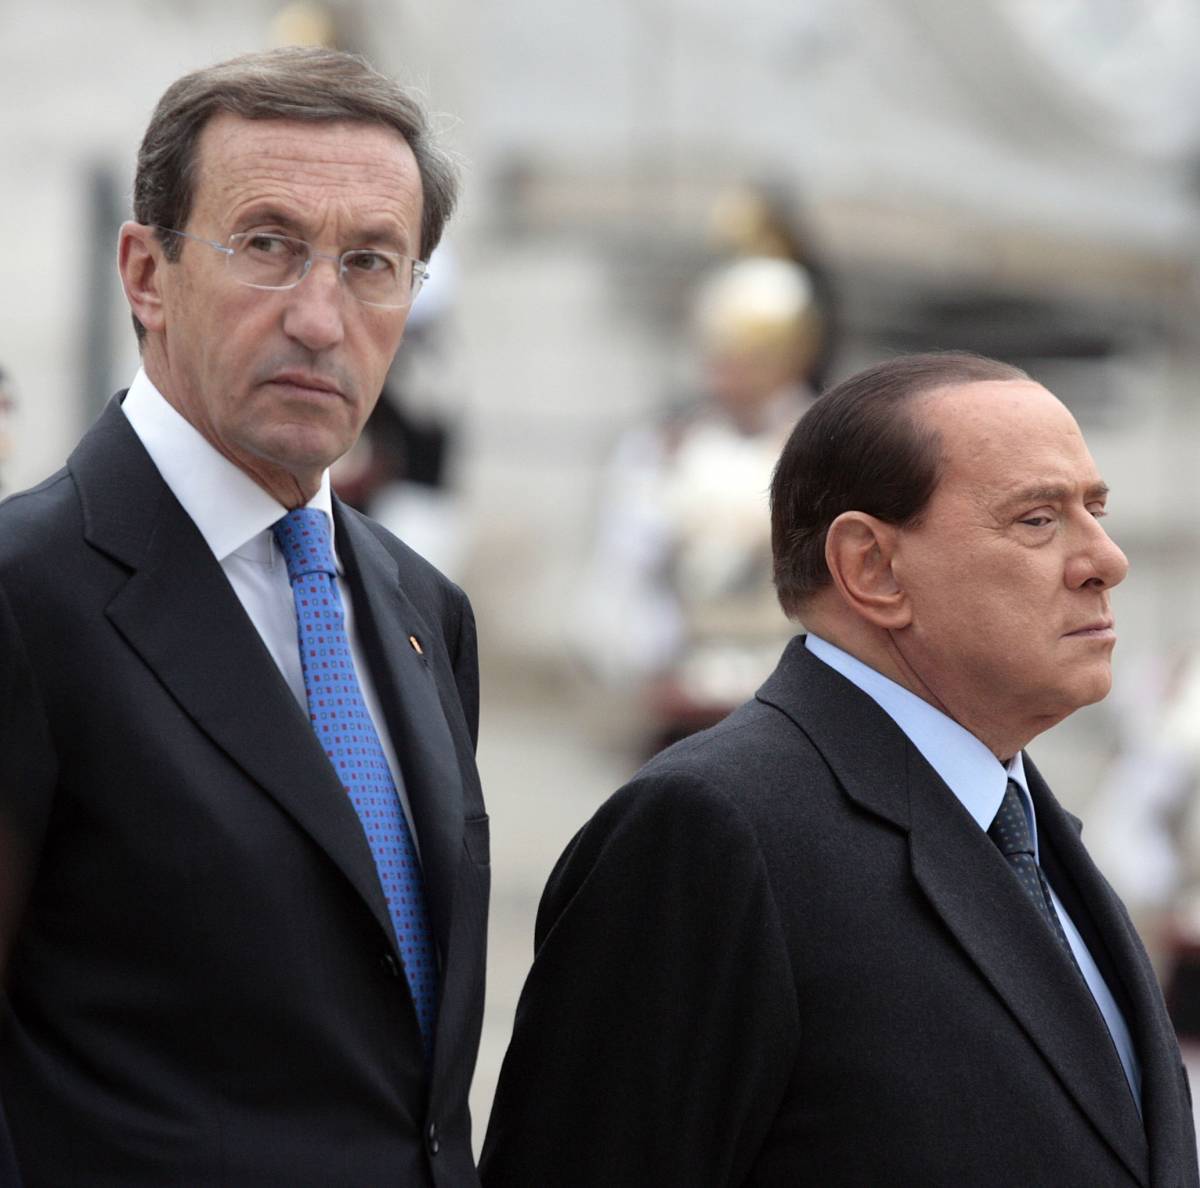 Fini e Lega, Berlusconi "irritato" riapre a Casini